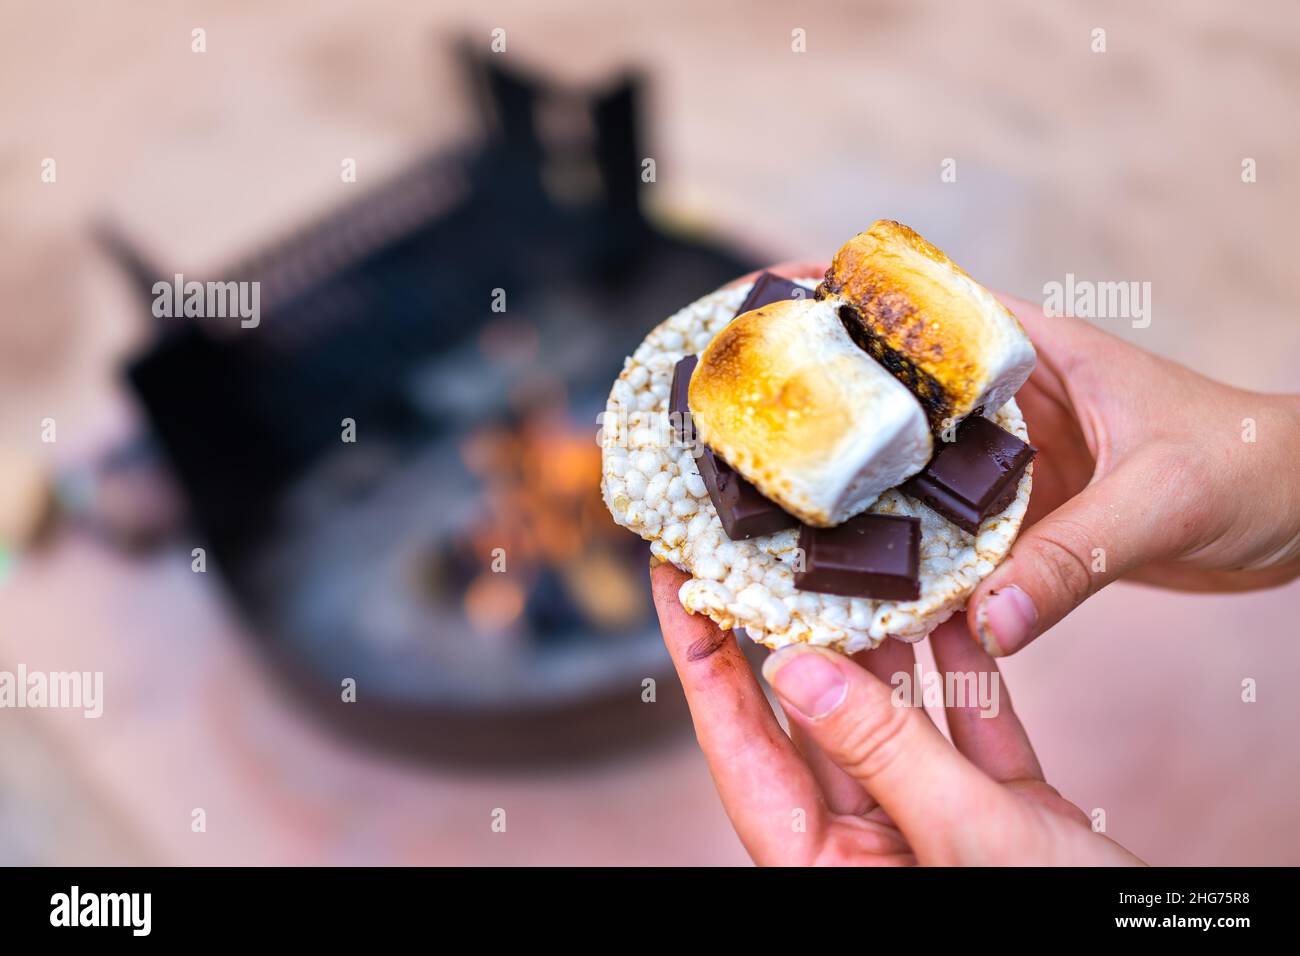 Giovane donna campeggio closeup mano che tiene marshmallows arrostiti smores con tavolette di cioccolato e cracker torta di riso da fuoco buca in campeggio campfi Foto Stock